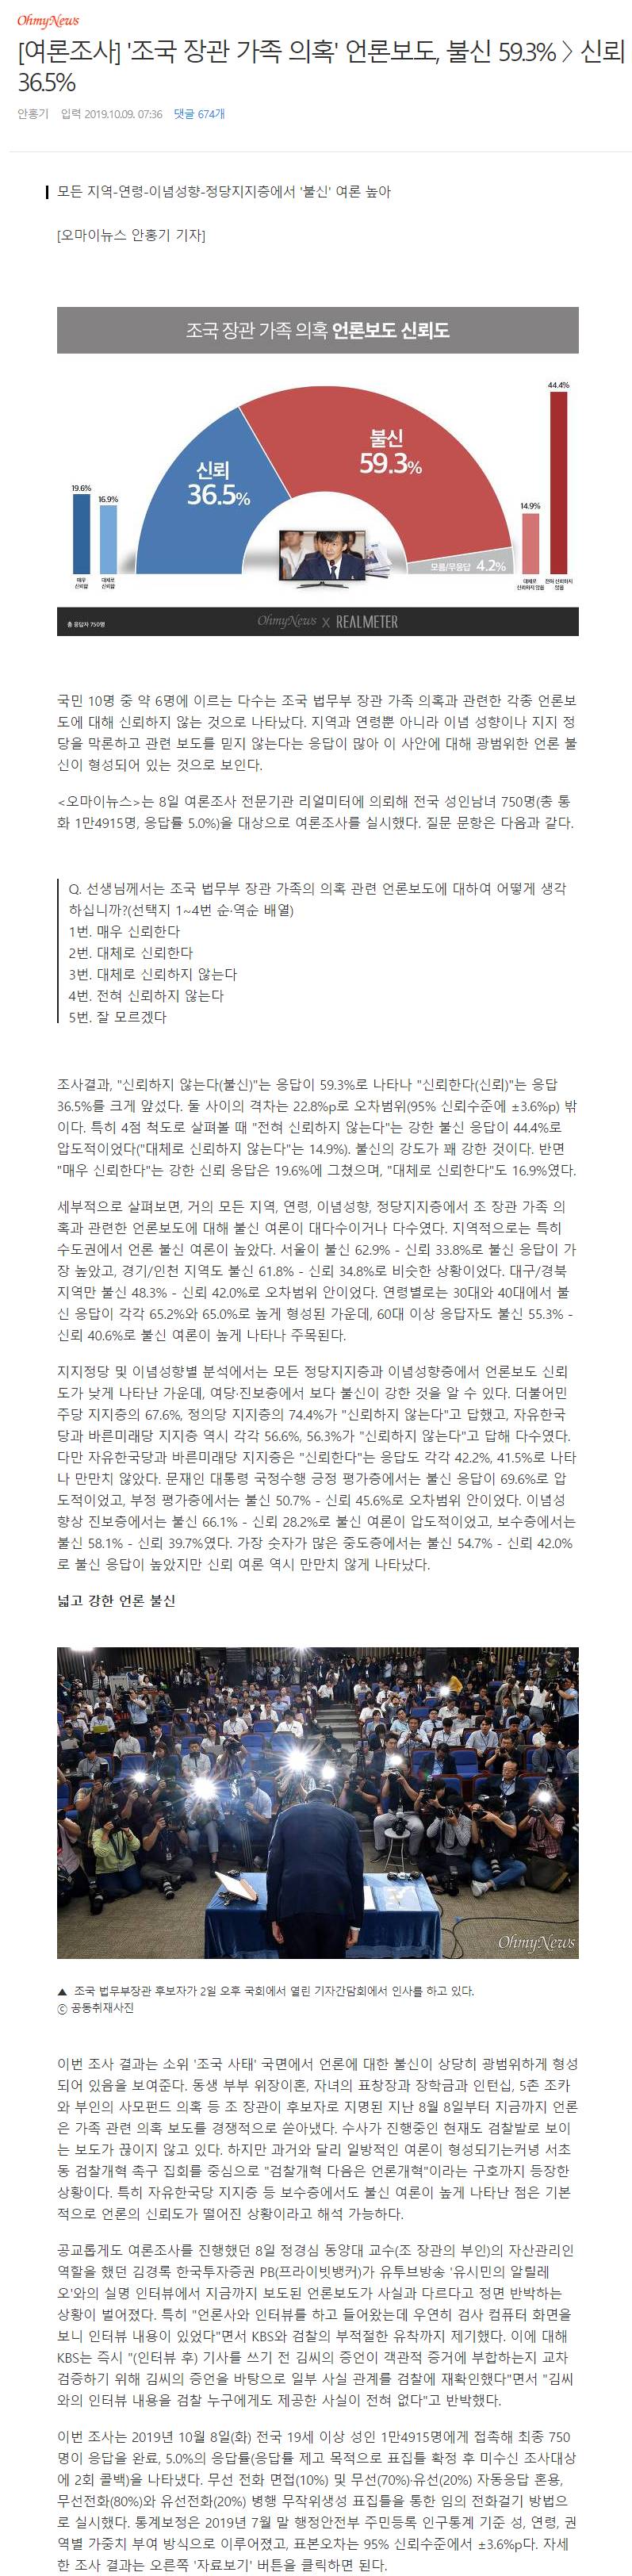 '조국 장관 가족 의혹' 언론보도, 불신 59.3% 〉 신뢰 36.5% | 인스티즈